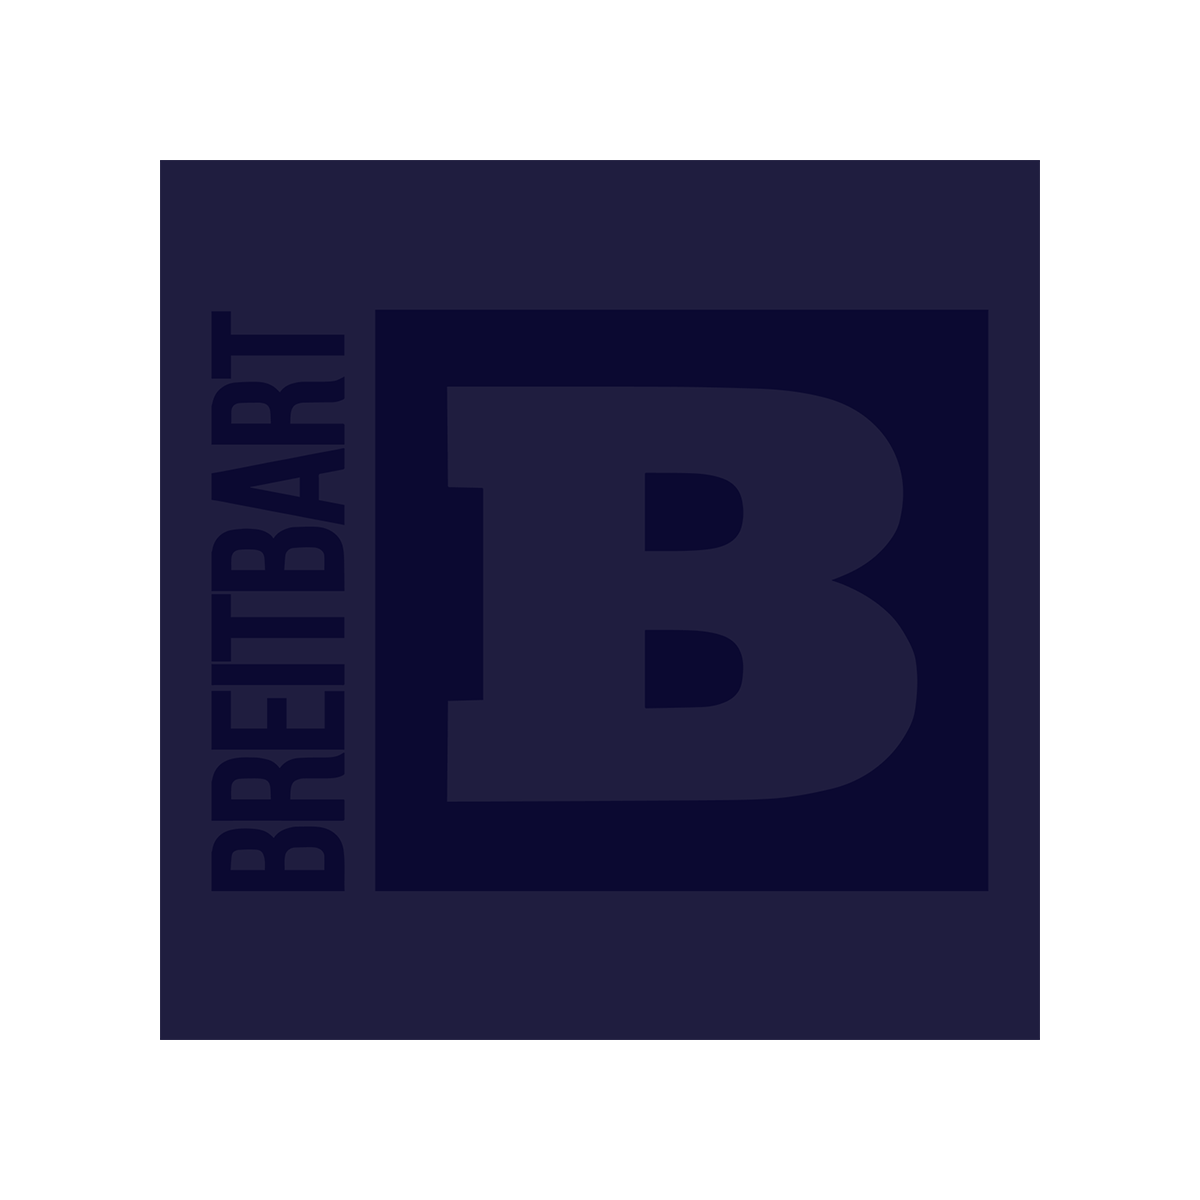 Breitbart Logo Women's T-Shirt - Navy